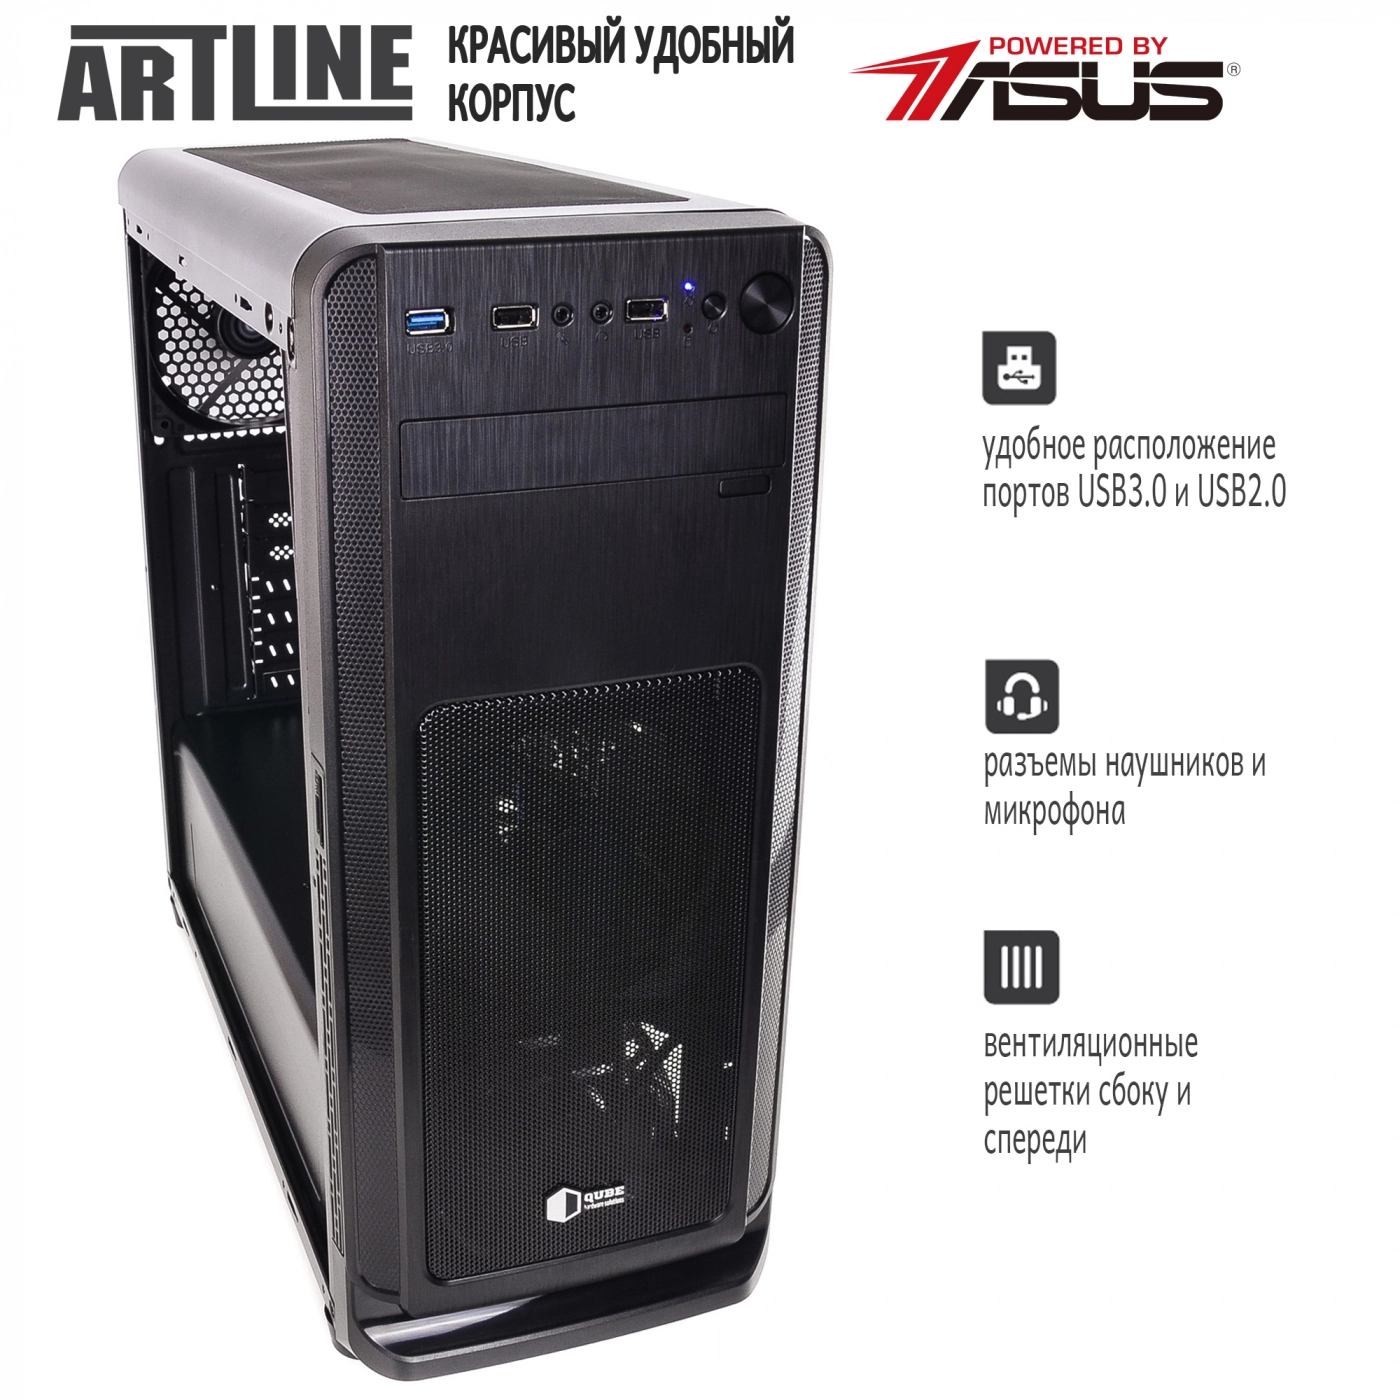 Купить Сервер ARTLINE Business T65v05 - фото 4